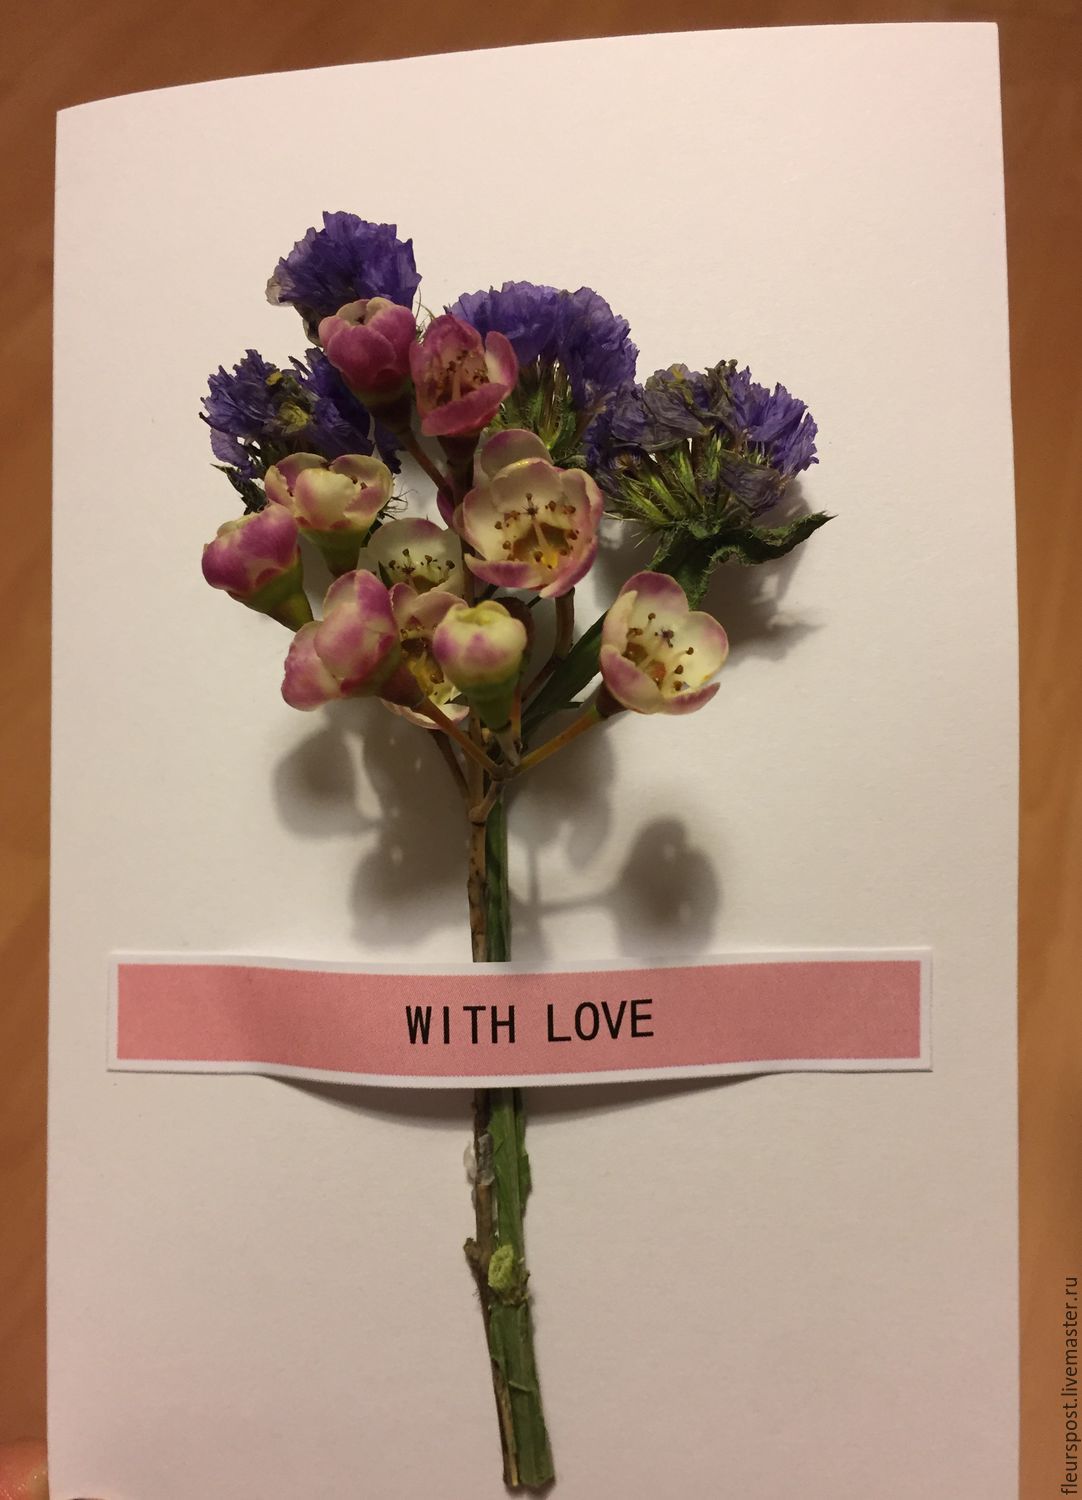 FleursPost - проект, который объединяет любовь к цветам, открыткам и тепло ручной работы.